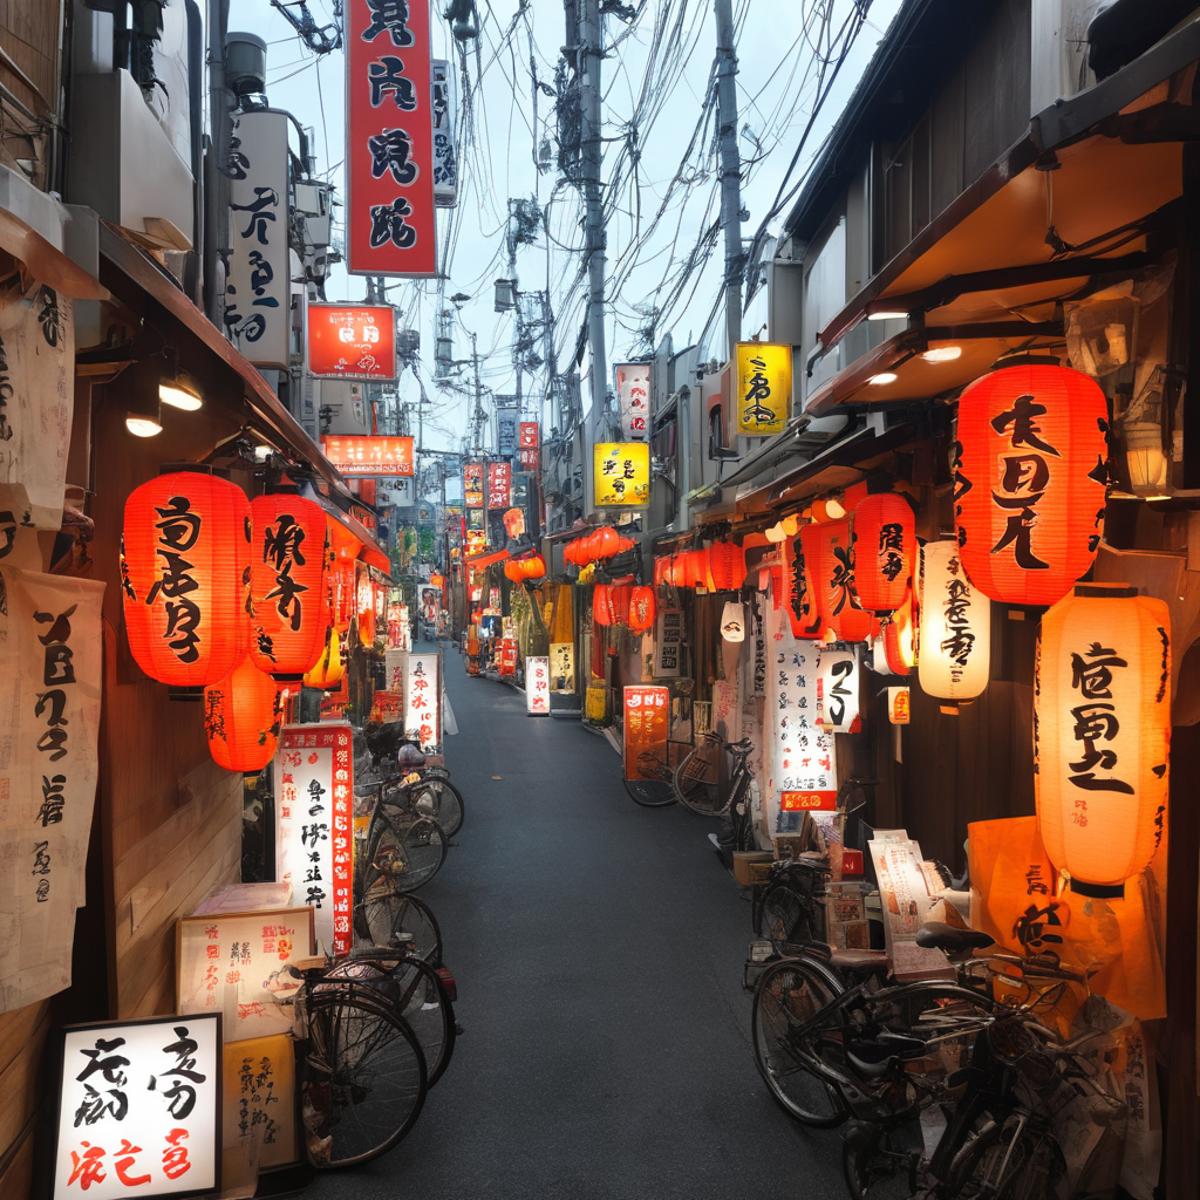 飲み屋街～しょんべん横丁(大阪・十三)  / Bar Street - Shonben Yokocho (Juso, Osaka) SDXL image by swingwings